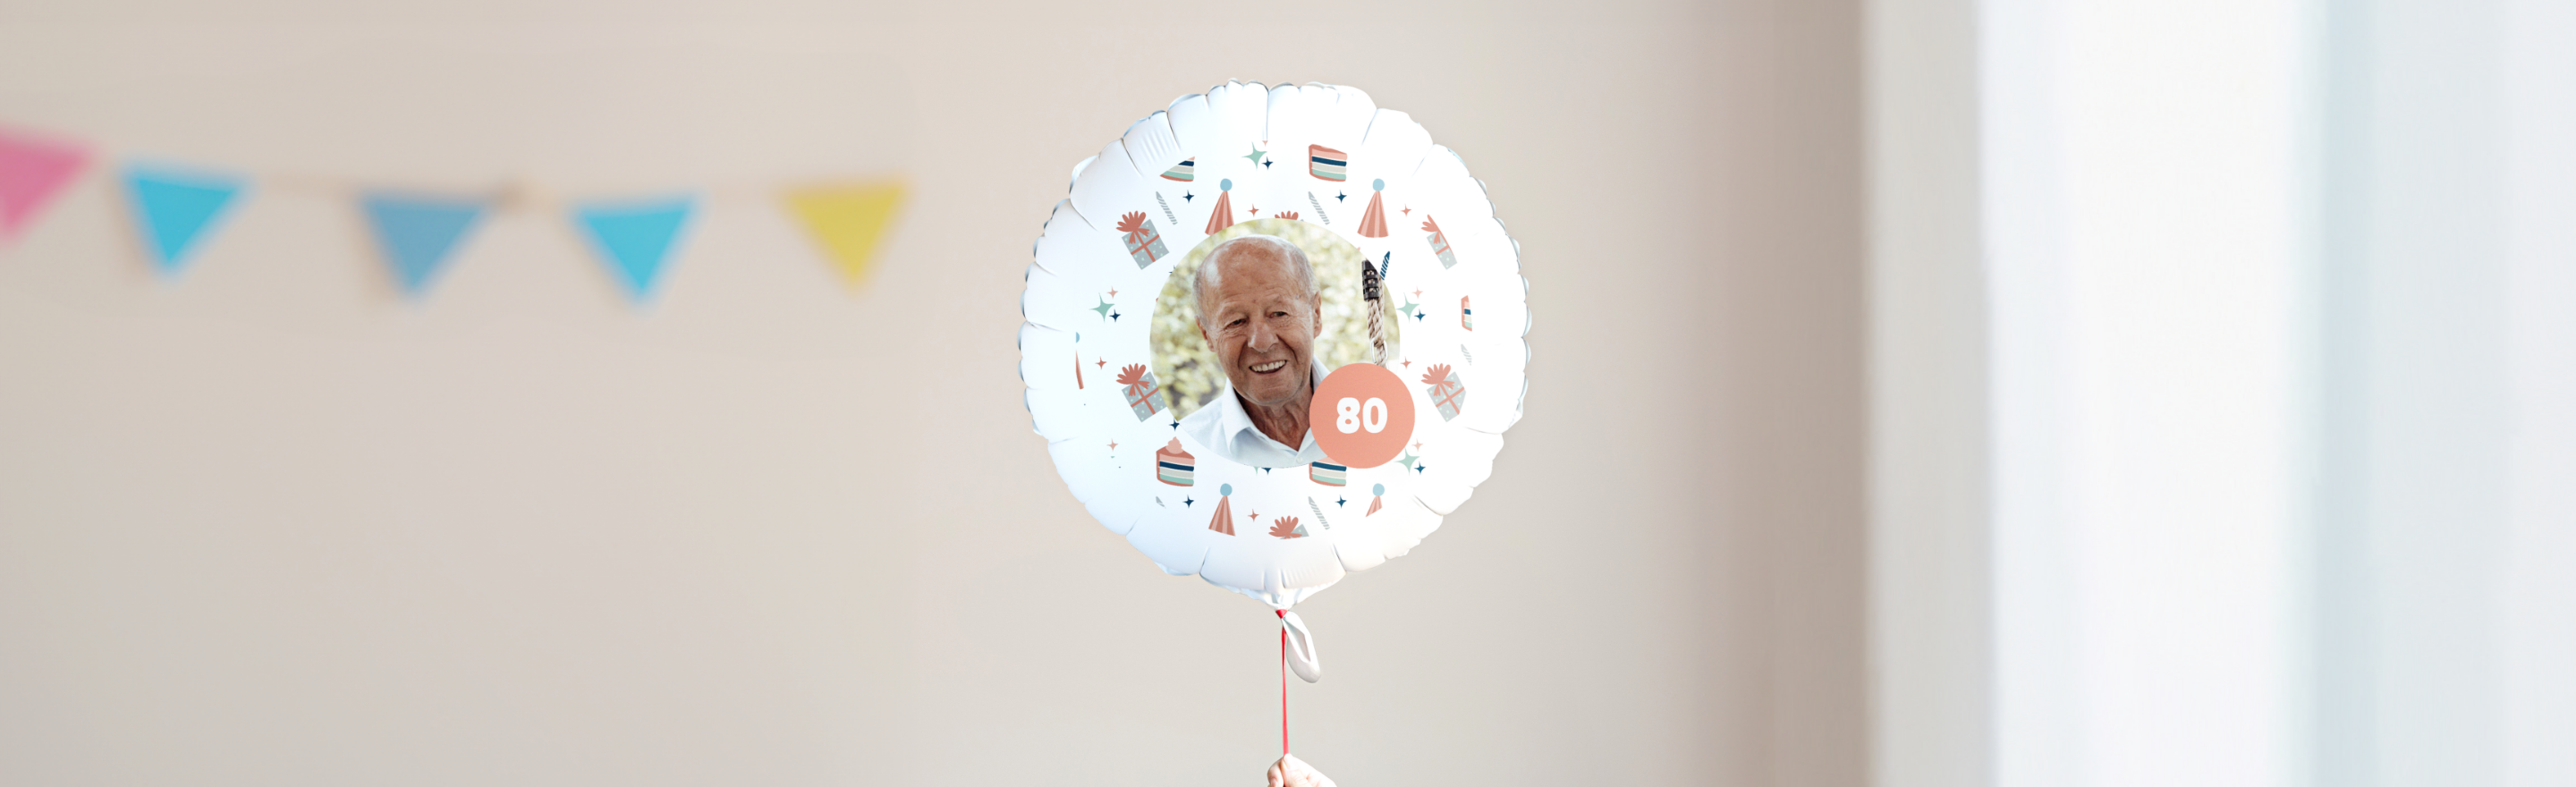 Prezent na 80 urodziny
